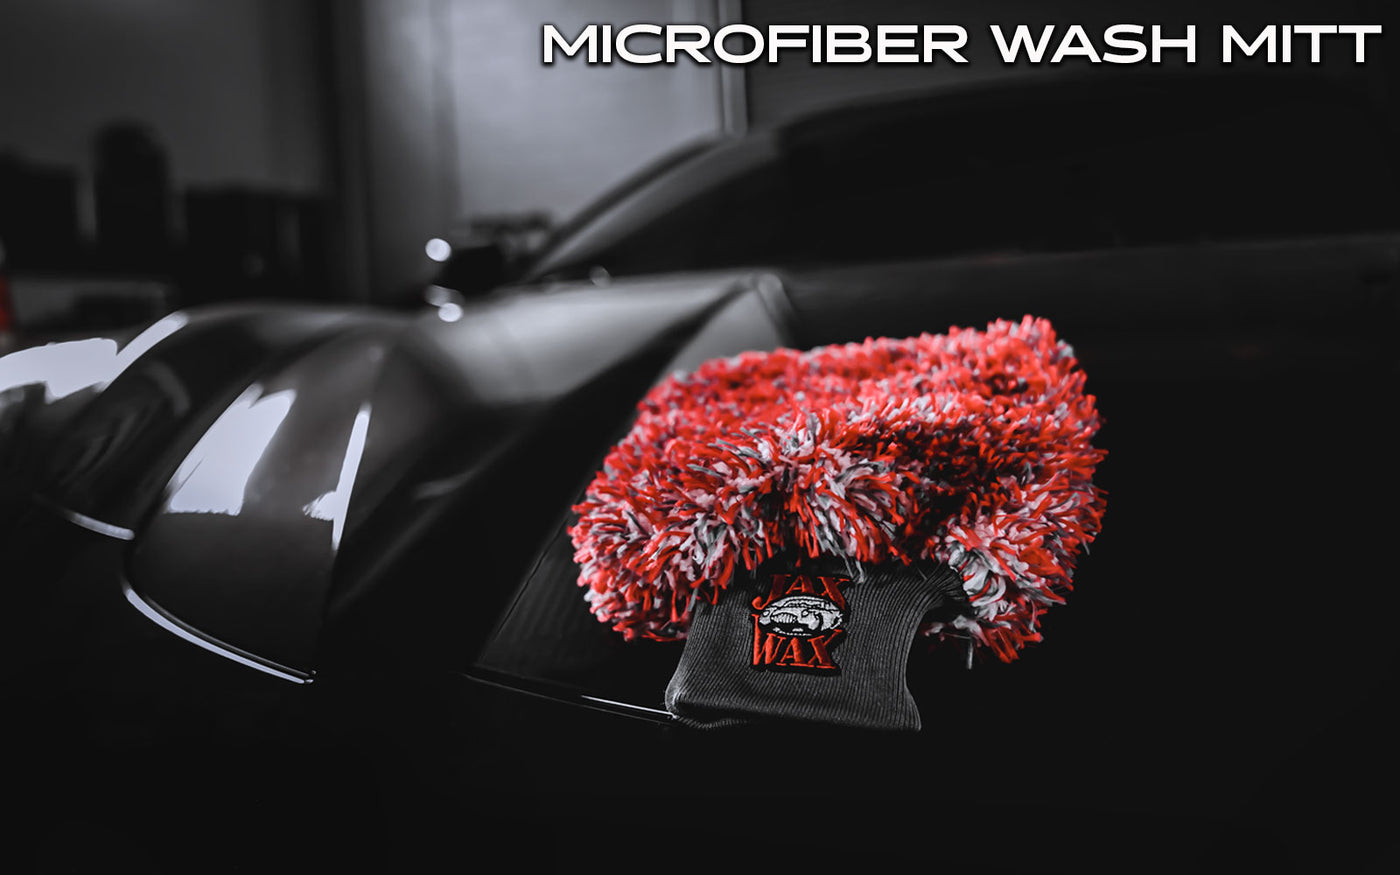 Jax Wax, Microfiber Wash Mitt, Car Washing, Microfiber, Wash Mitt